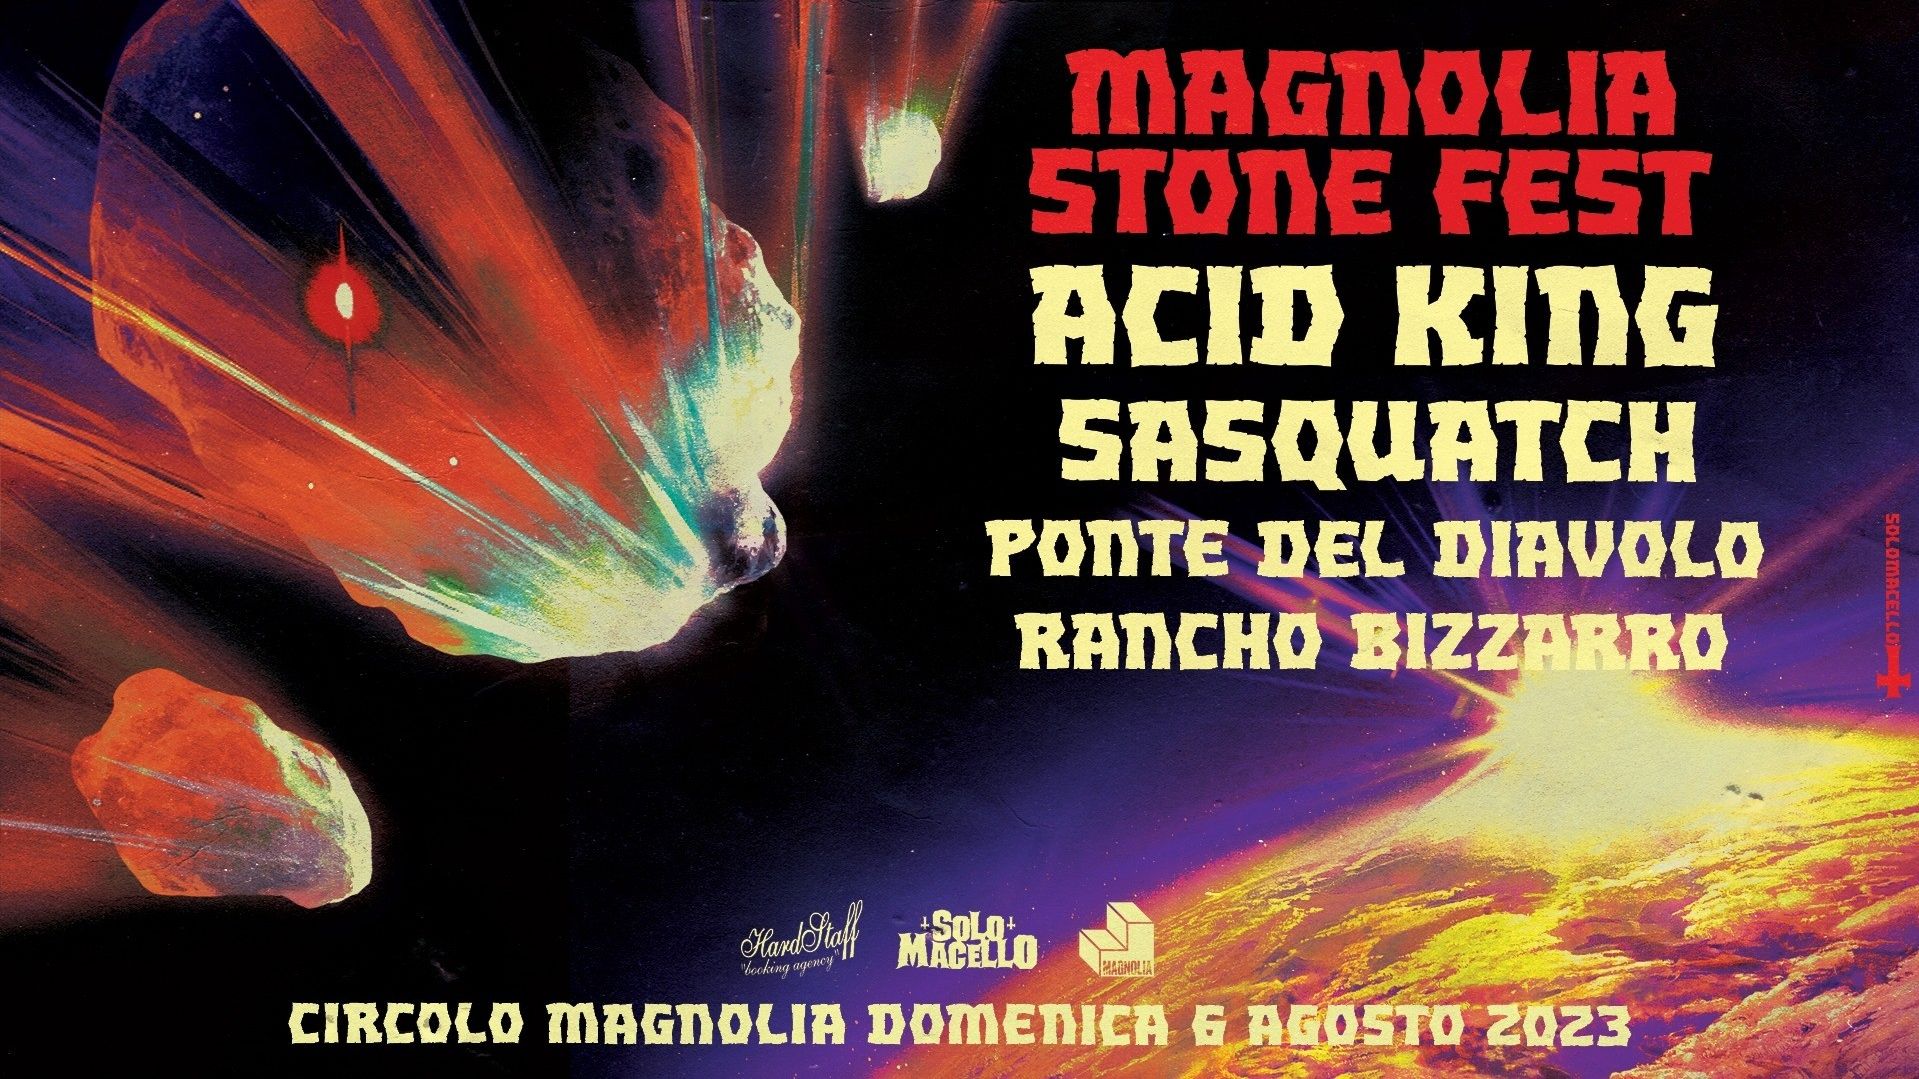 Magnolia Stone Fest 2023